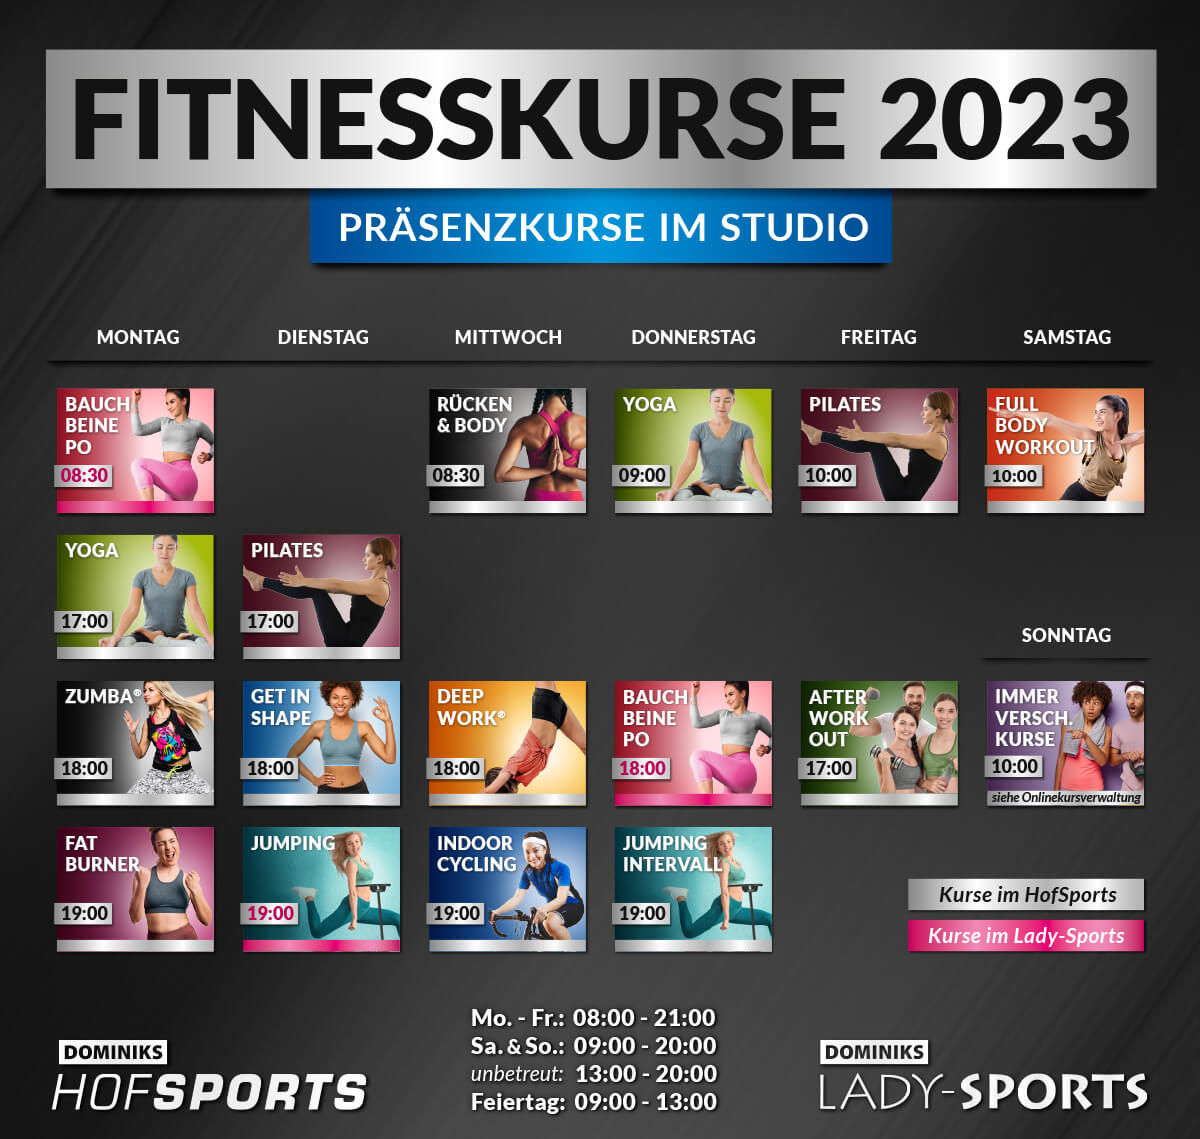 DOMINIKS HofSports Lady-Sports Fitnesskurse Kursplan 2023